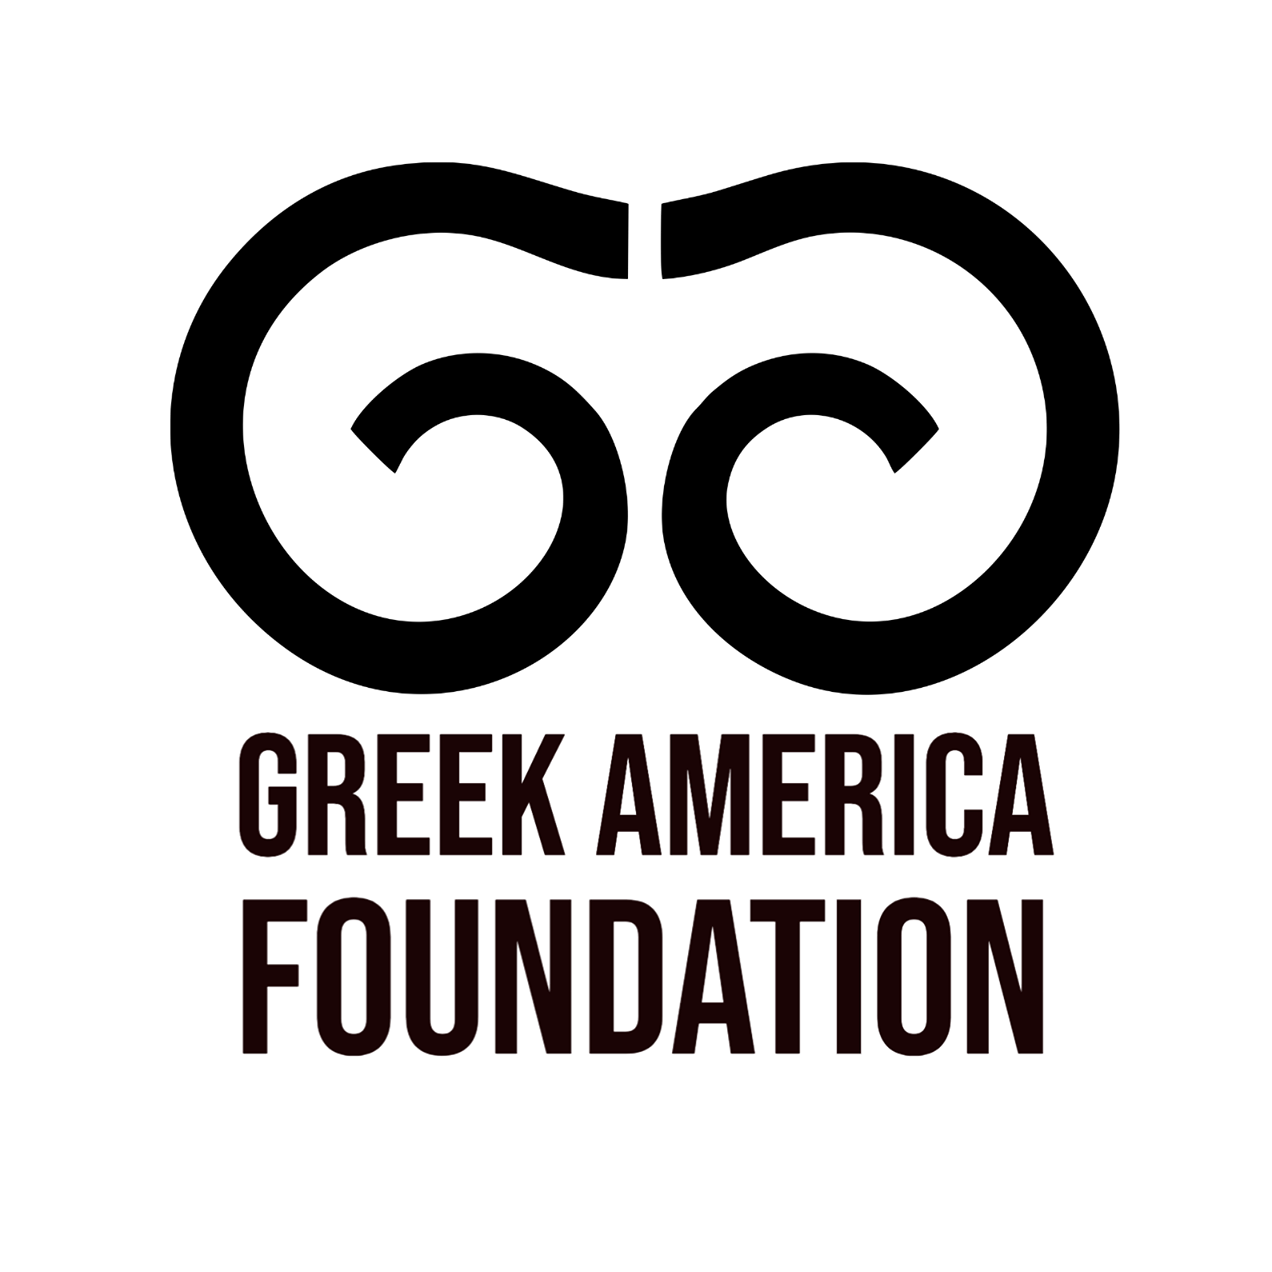 Greek Cultural Organization in New York - Greek America Foundation